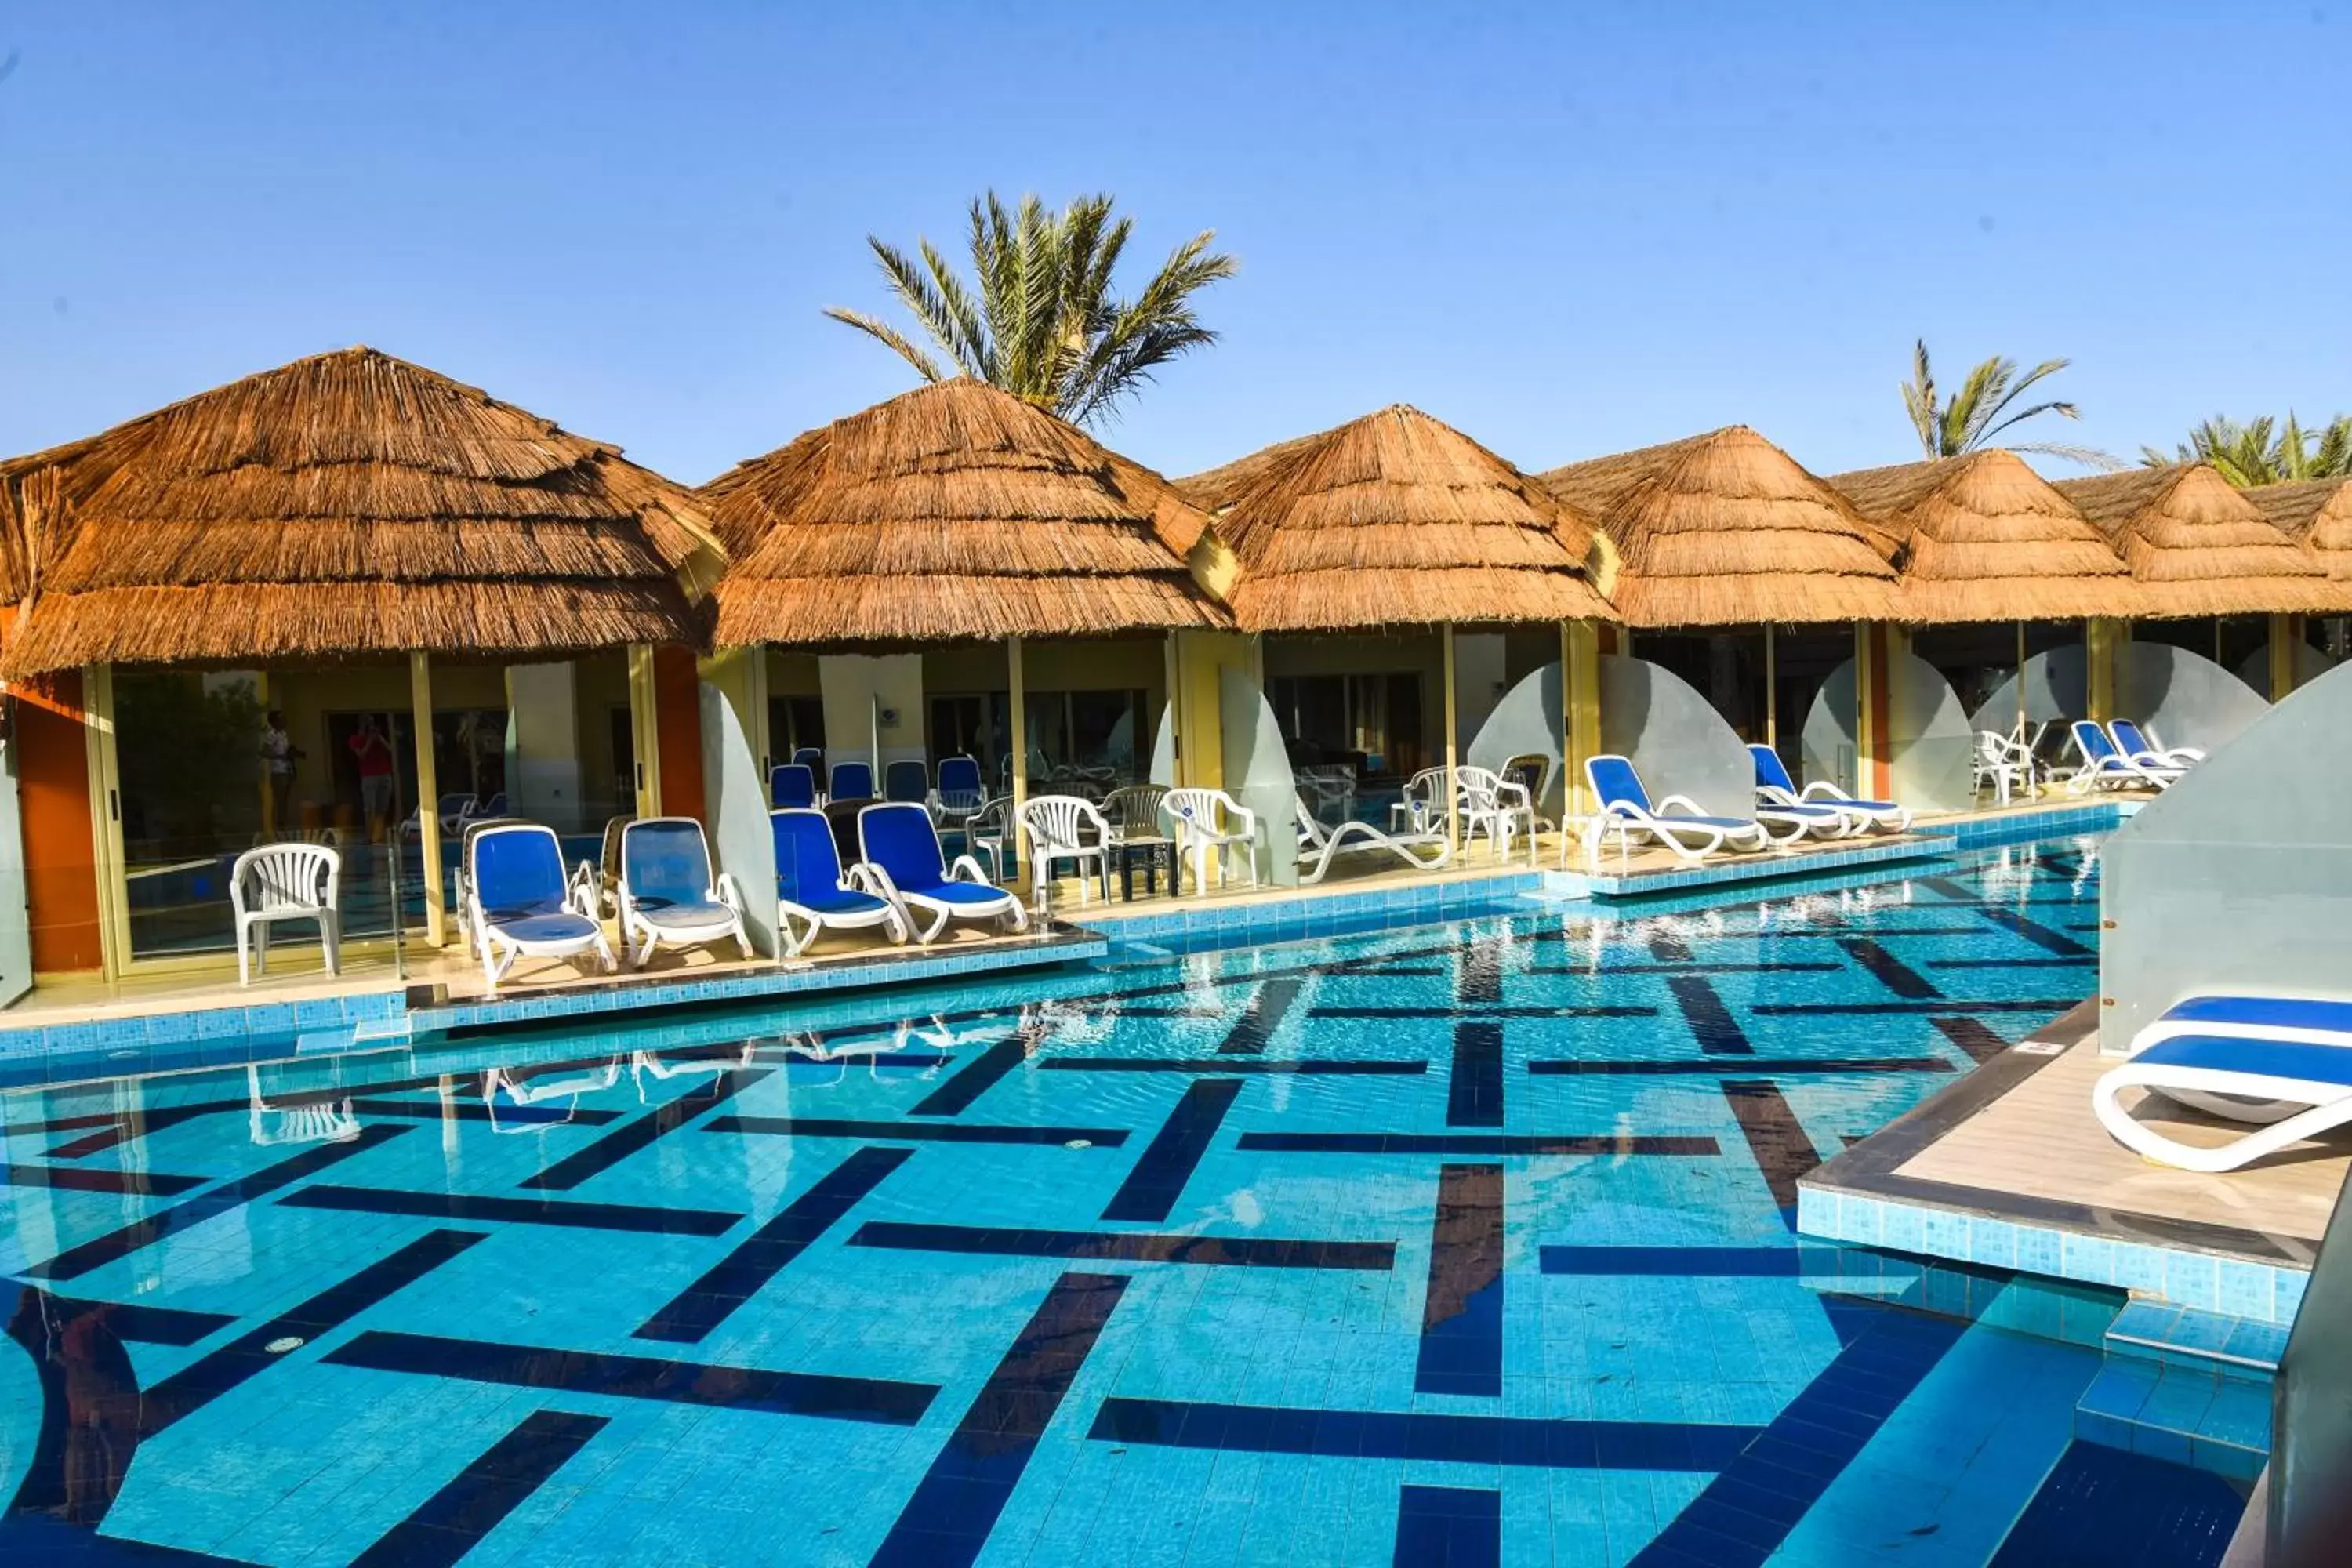 Swimming Pool in Panorama Bungalows Resort El Gouna